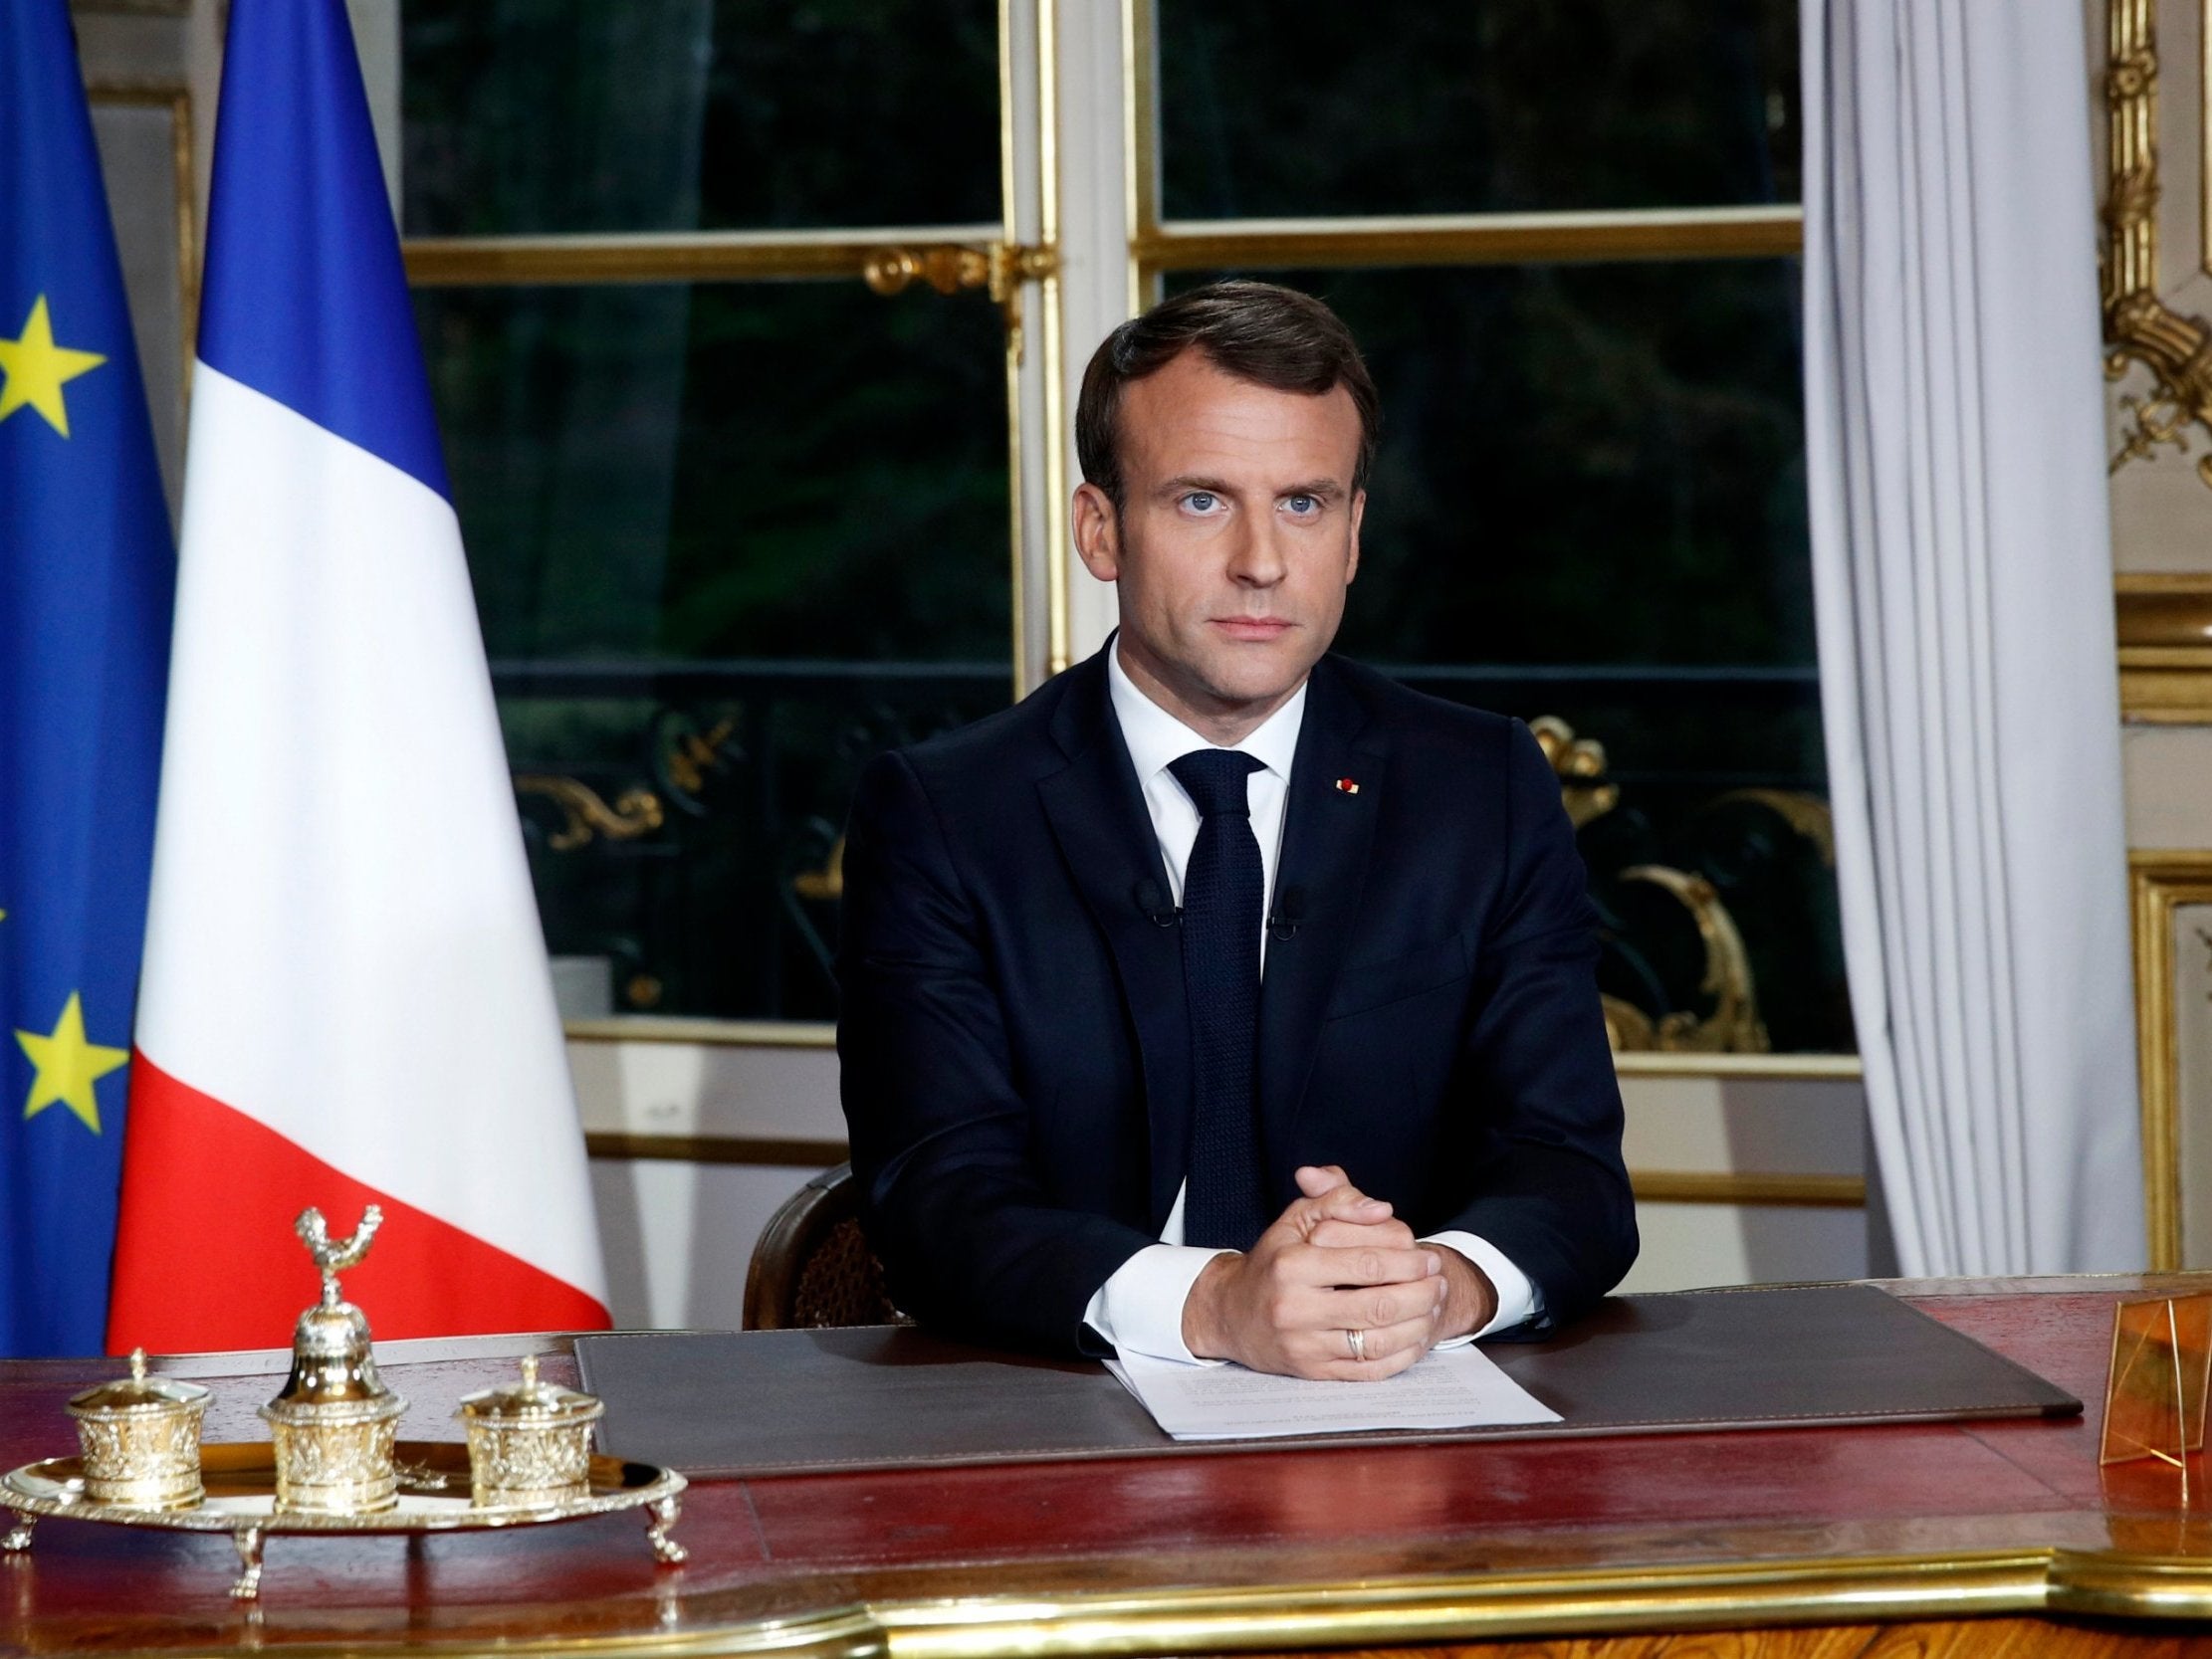 Emmanuel Macron speaks to the nation about restoring Notre Dame